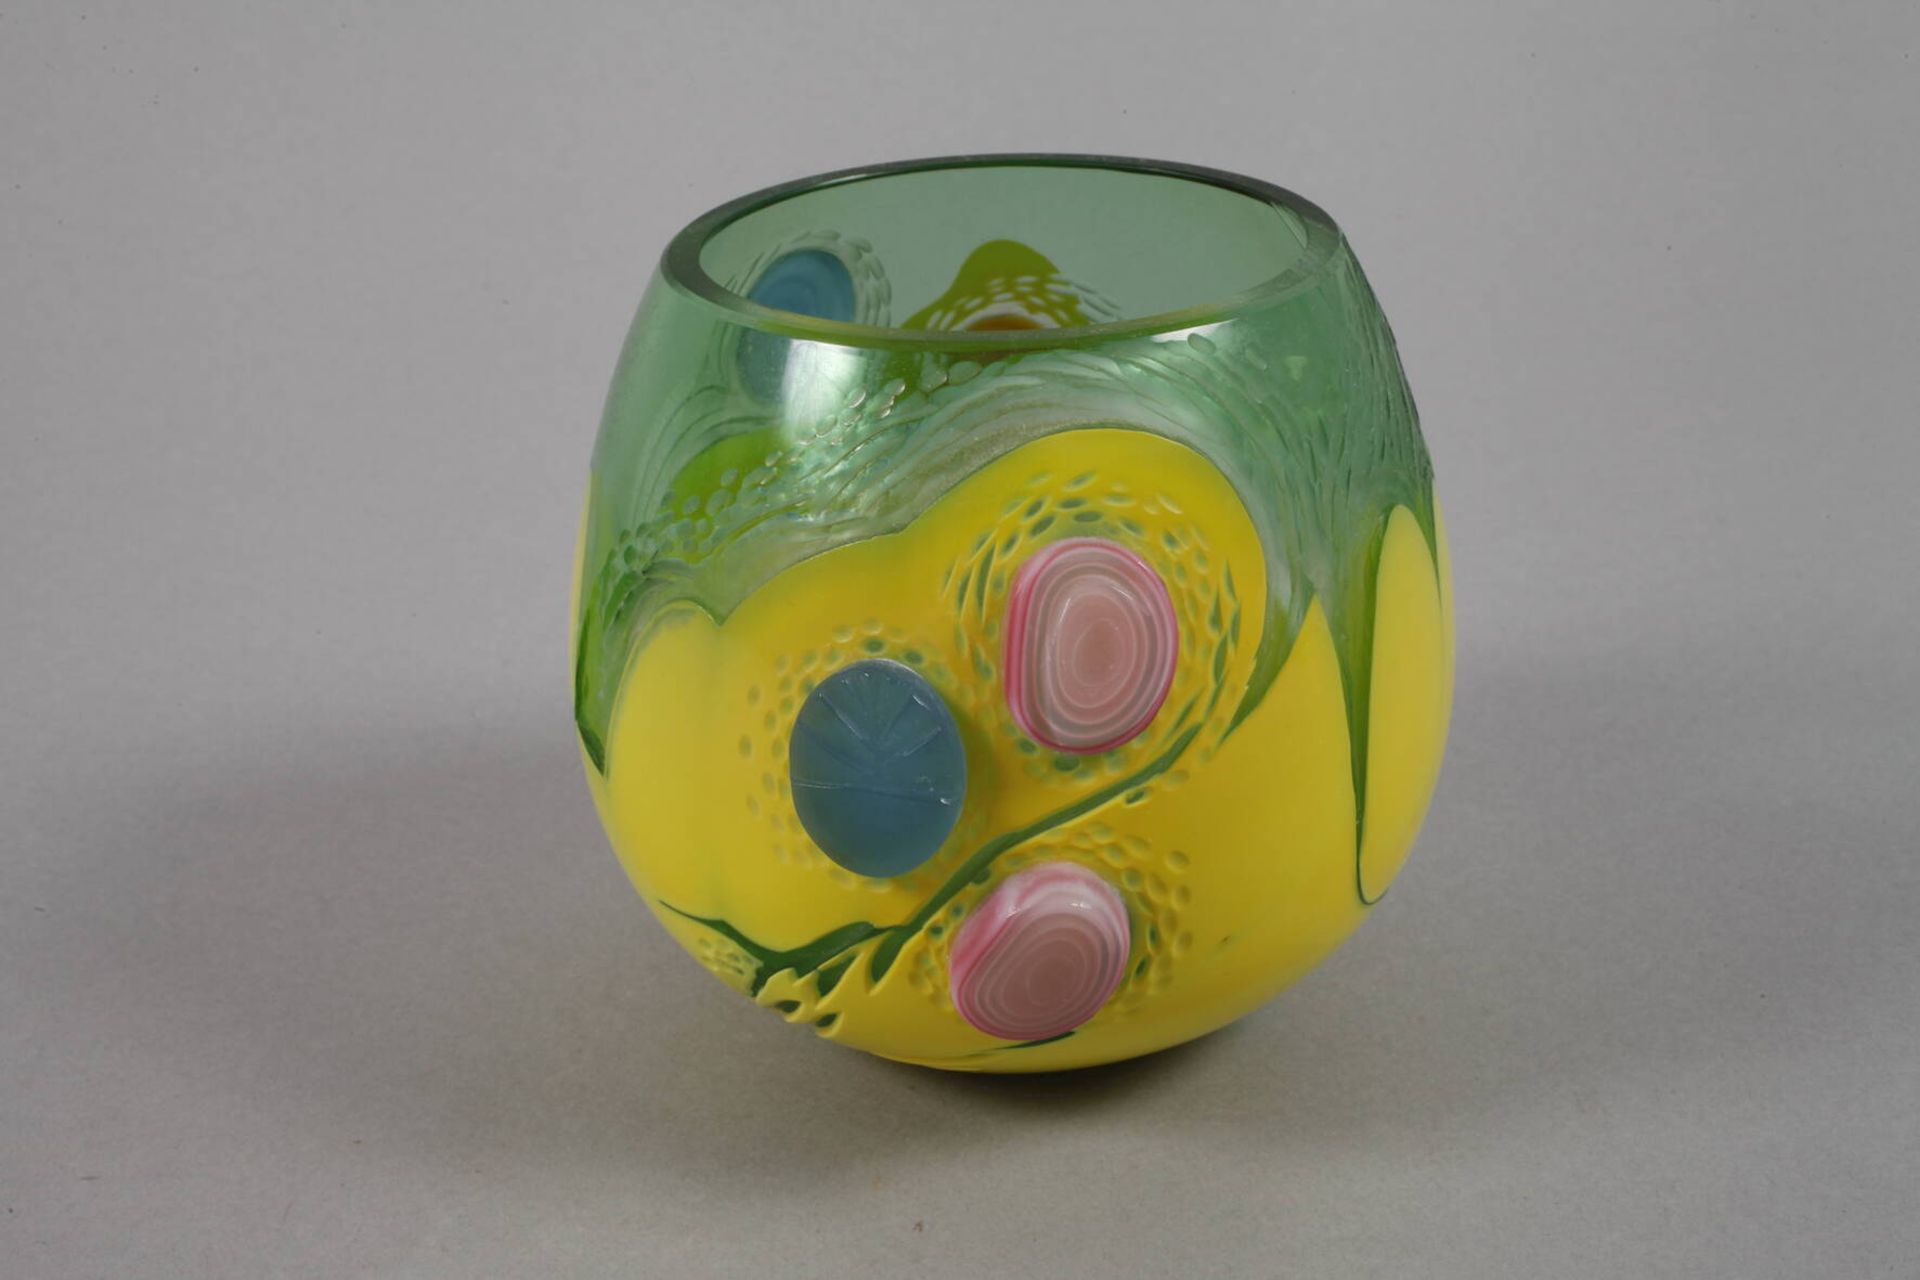 Vase Studioglasdatiert 2000, Herstellermonogramm JV., farbloses Glas, grün und gelb überfangen, - Bild 2 aus 5